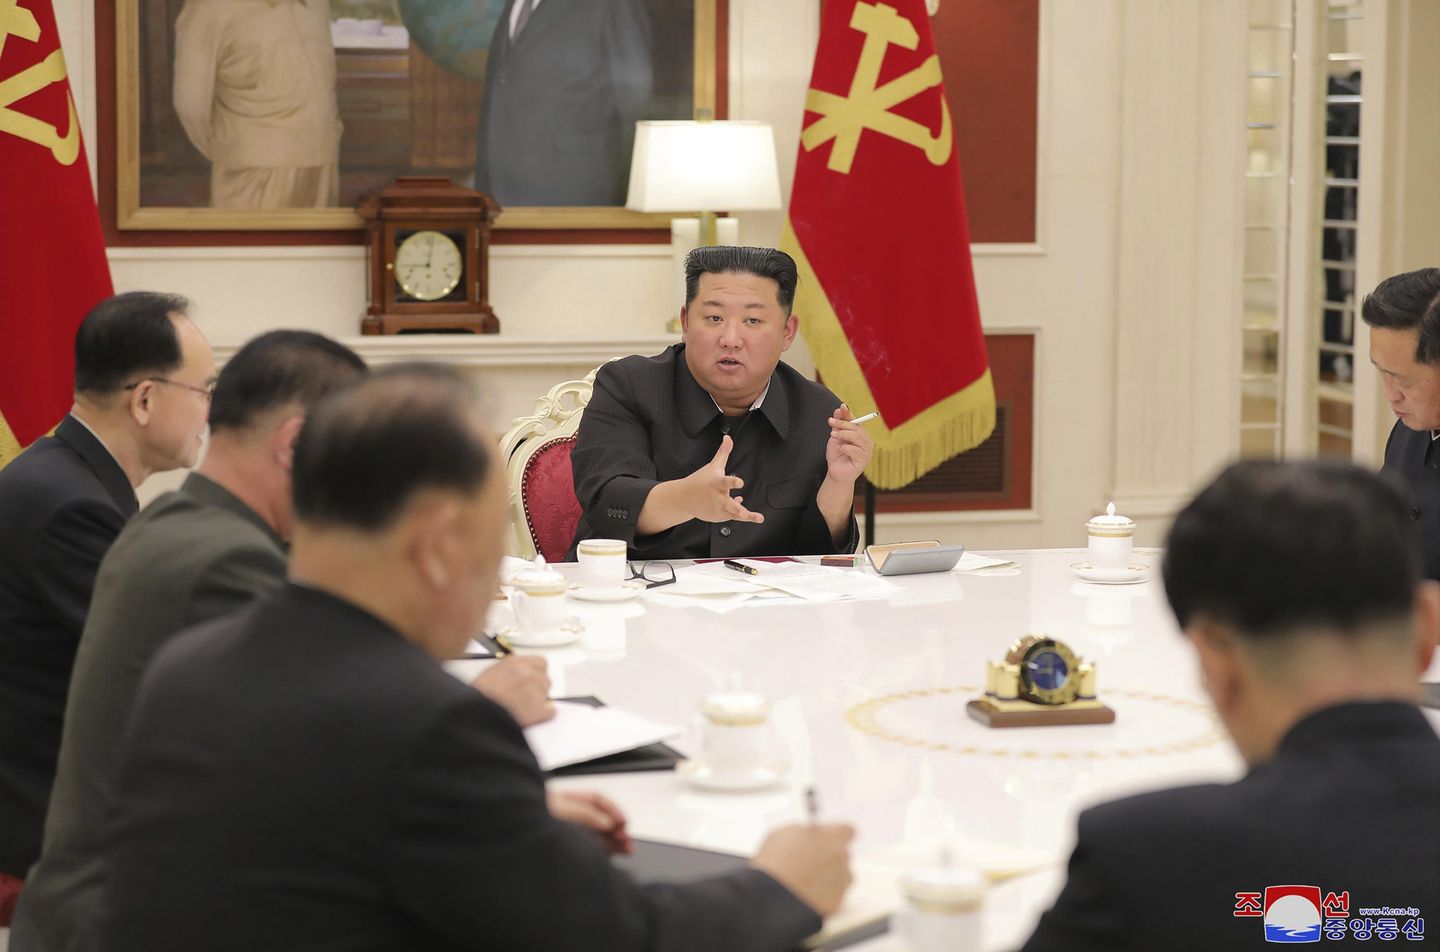 Kim Jong-un, Kuzey Kore'nin koronavirüse yanıtının 'olgunlaşmamışlığını' patlattı